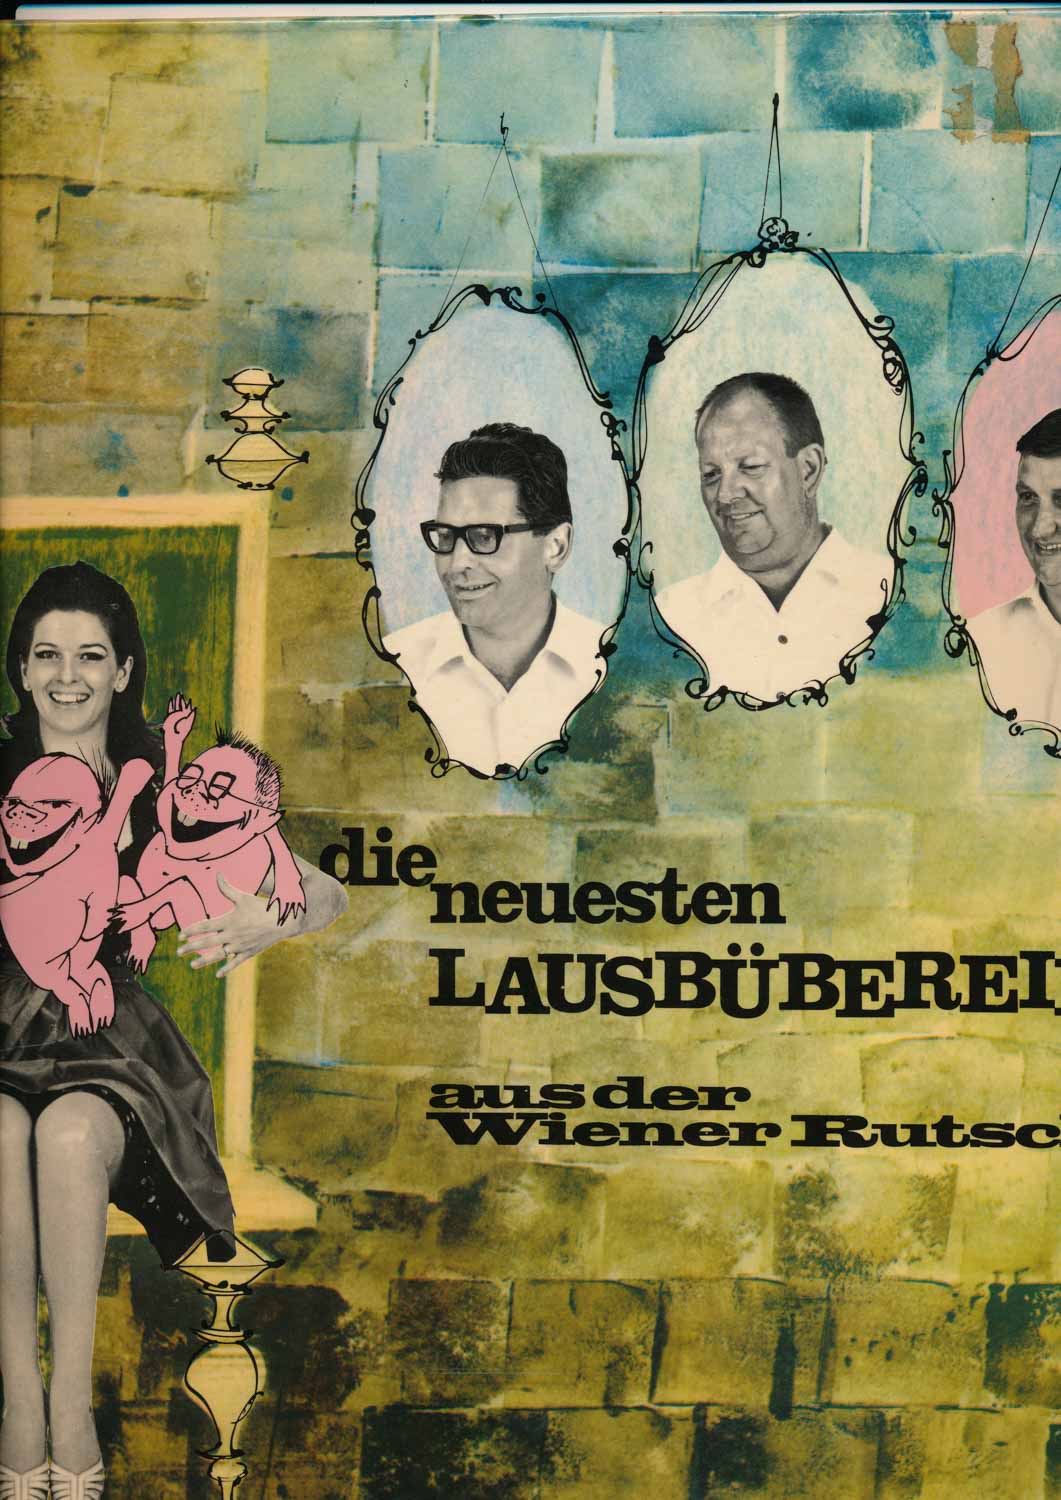 Wiener Rutsch'n  Die neuesten Lausbübereien aus der Wiener Rutsch'n vol.1 (DLPS 1001)  *LP 12'' (Vinyl)*. 